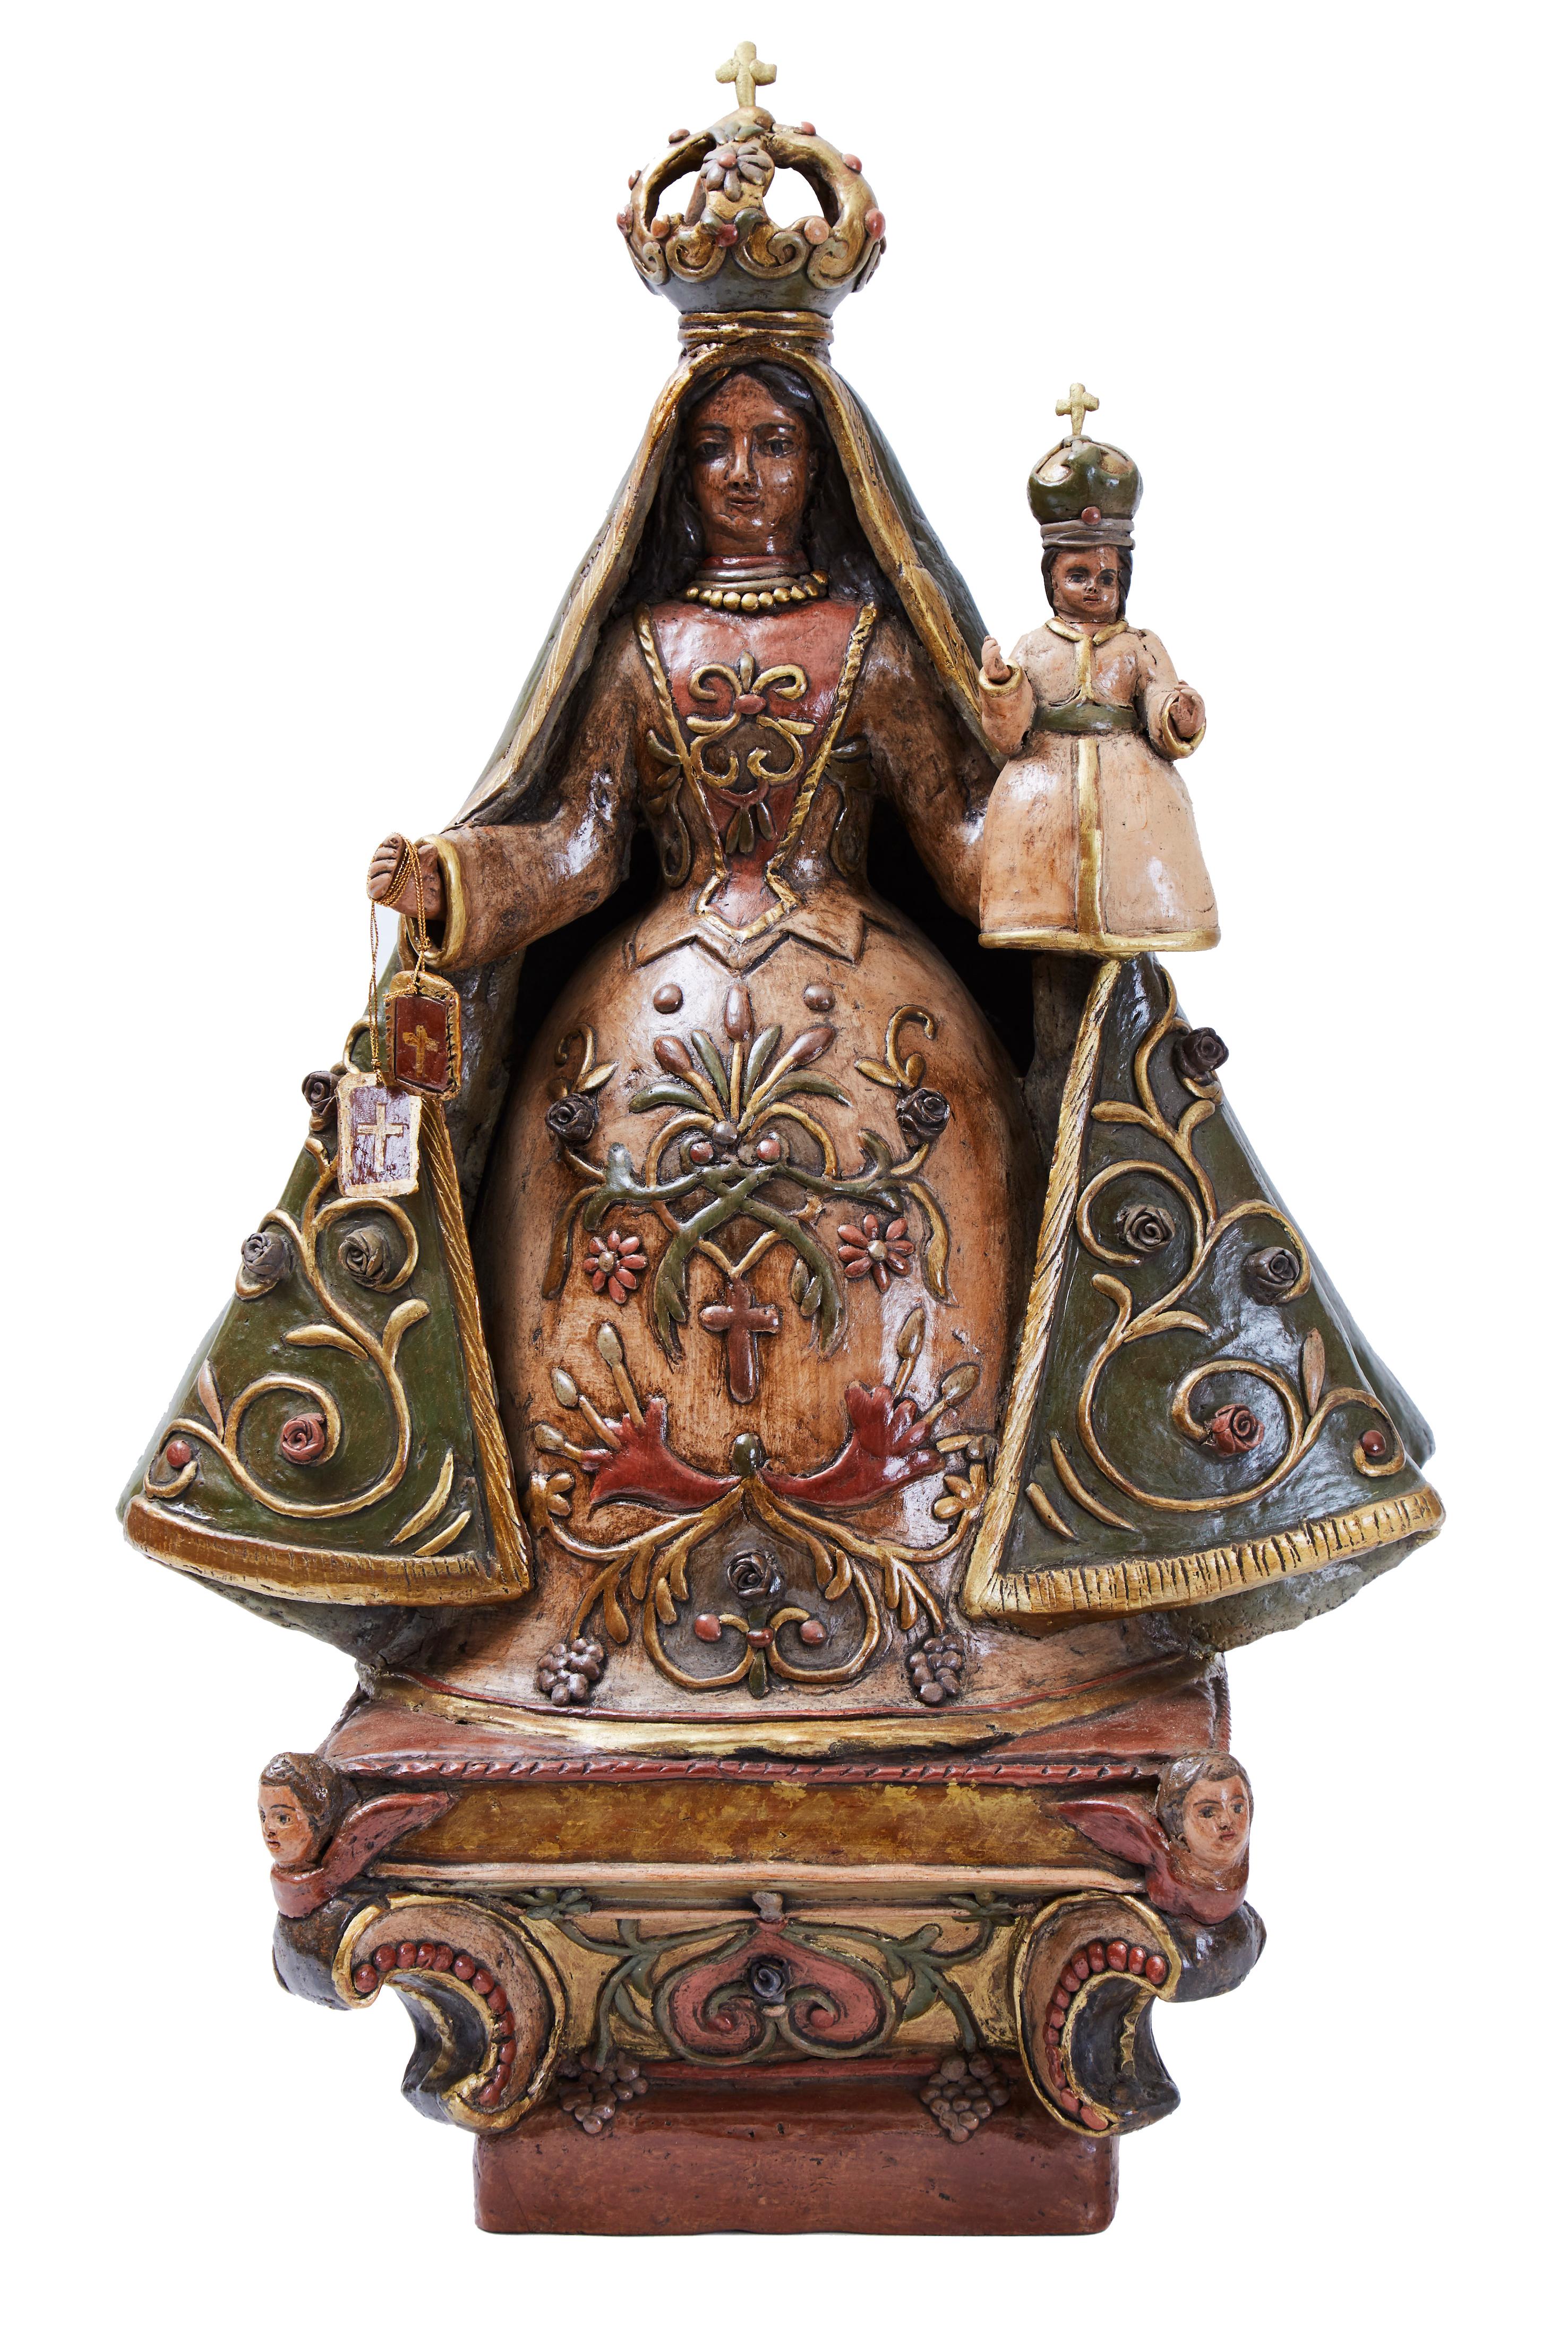 La Virgen del Carmen, Pottery & Ceramics, Mexican Folk Art, Cactus Fine Art